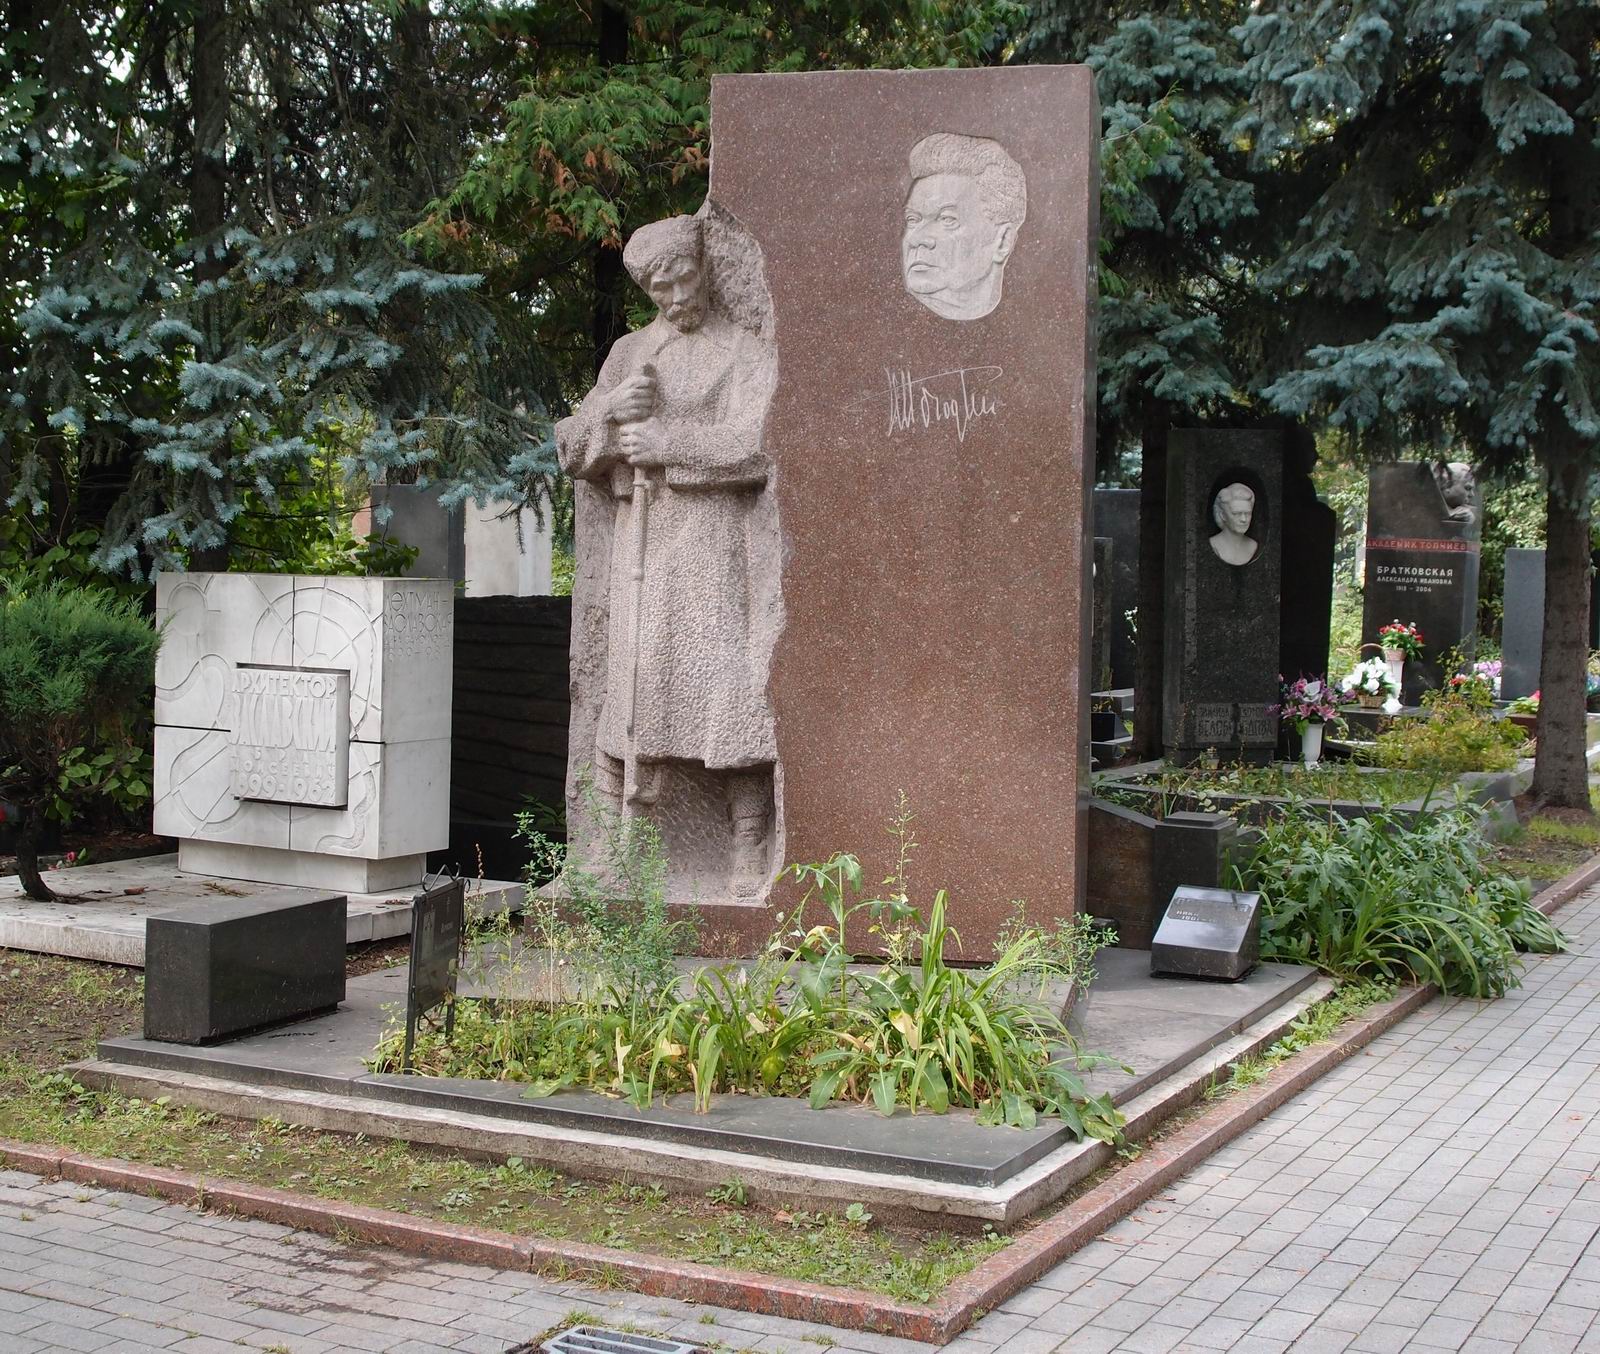 Памятник на могиле Погодина Н.Ф. (1900-1962), ск. А.Кибальников, арх. С.Феоктистов, на Новодевичьем кладбище (8-19-1). Нажмите левую кнопку мыши чтобы увидеть фрагмент памятника.